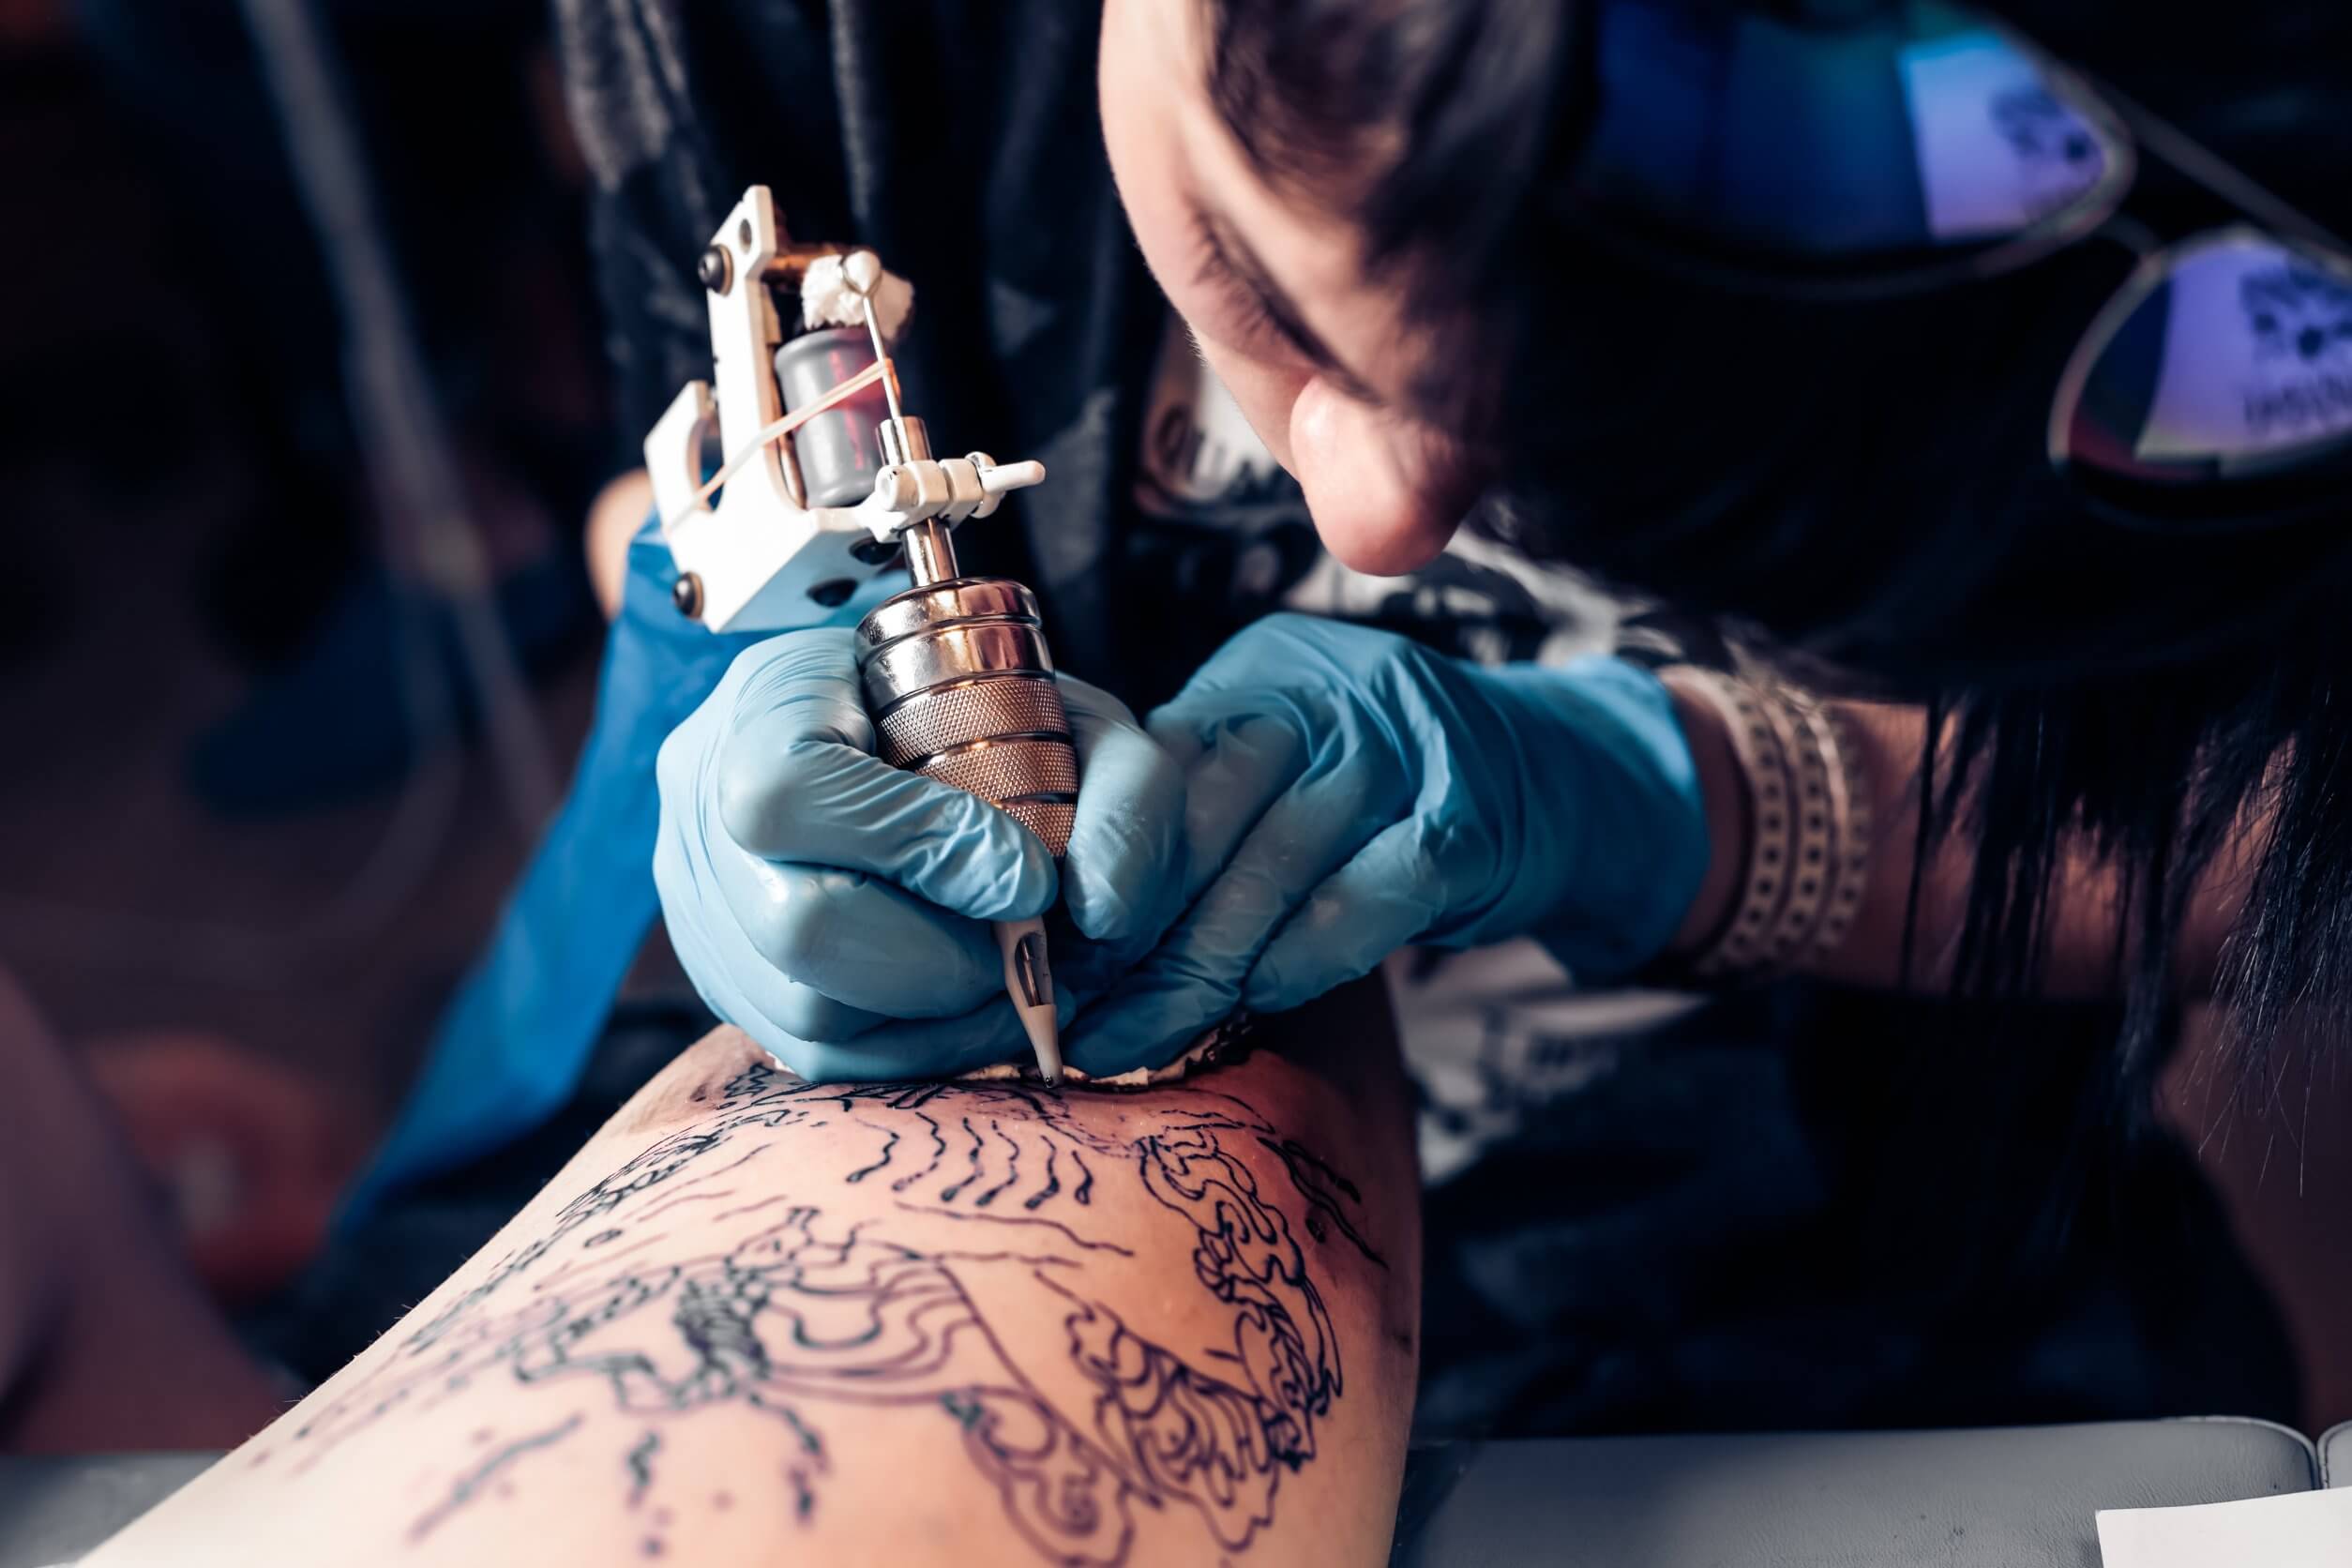 Tatuajes temporales: qué son y cuáles son sus riesgos